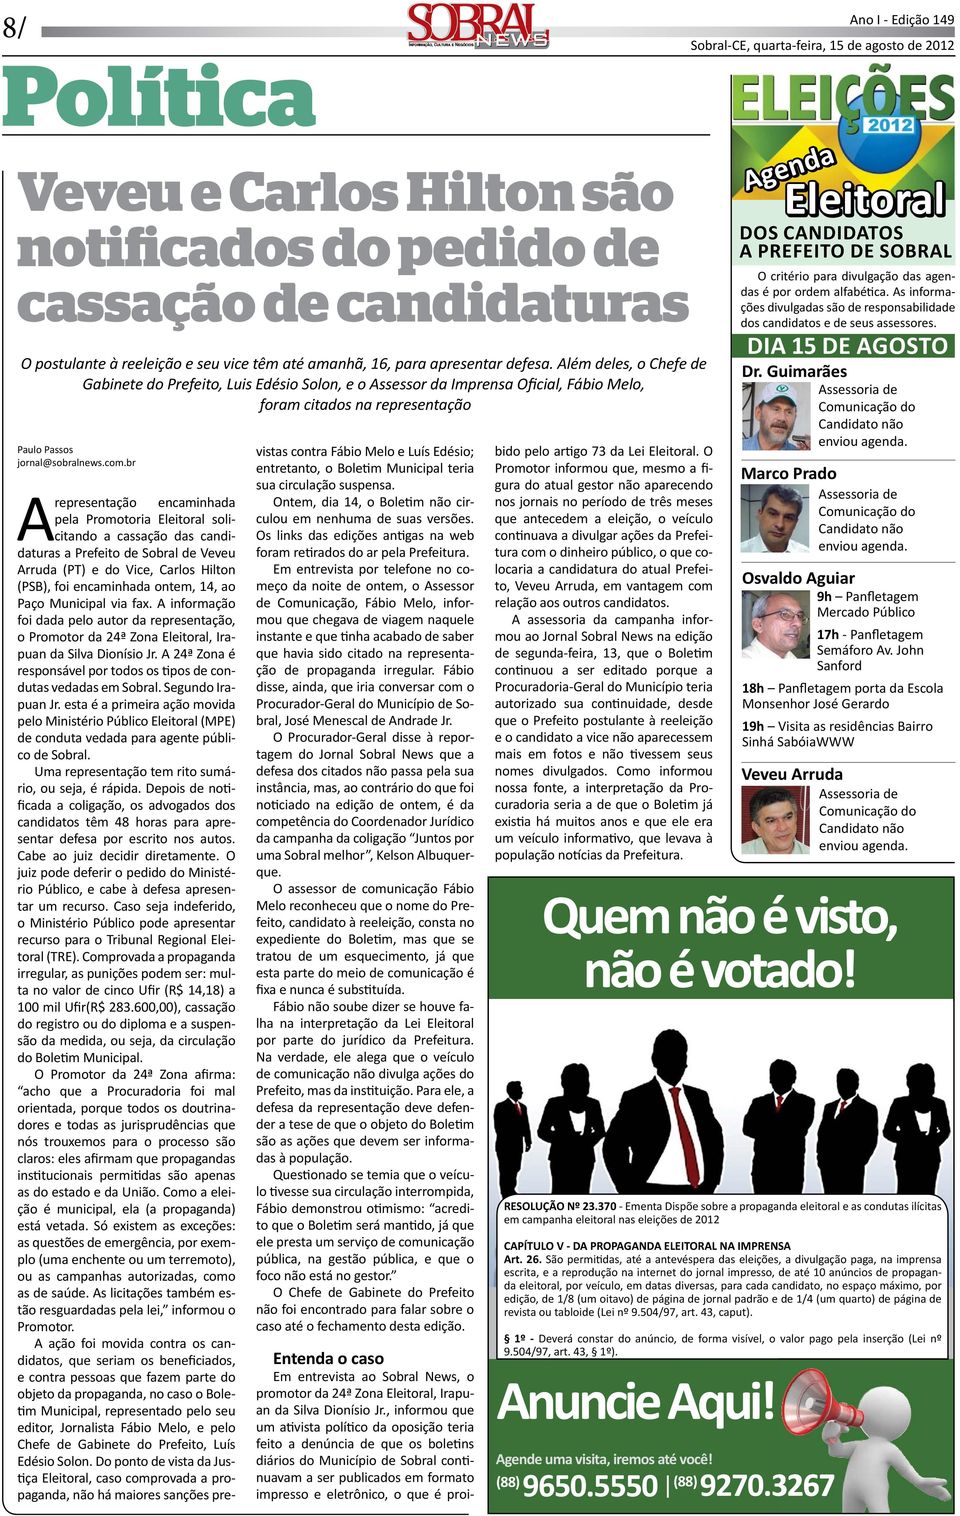 Eleitoral solicitando a cassação das candidaturas a Prefeito de Sobral de Veveu Arruda (PT) e do Vice, Carlos Hilton (PSB), foi encaminhada ontem, 14, ao Paço Municipal via fax.